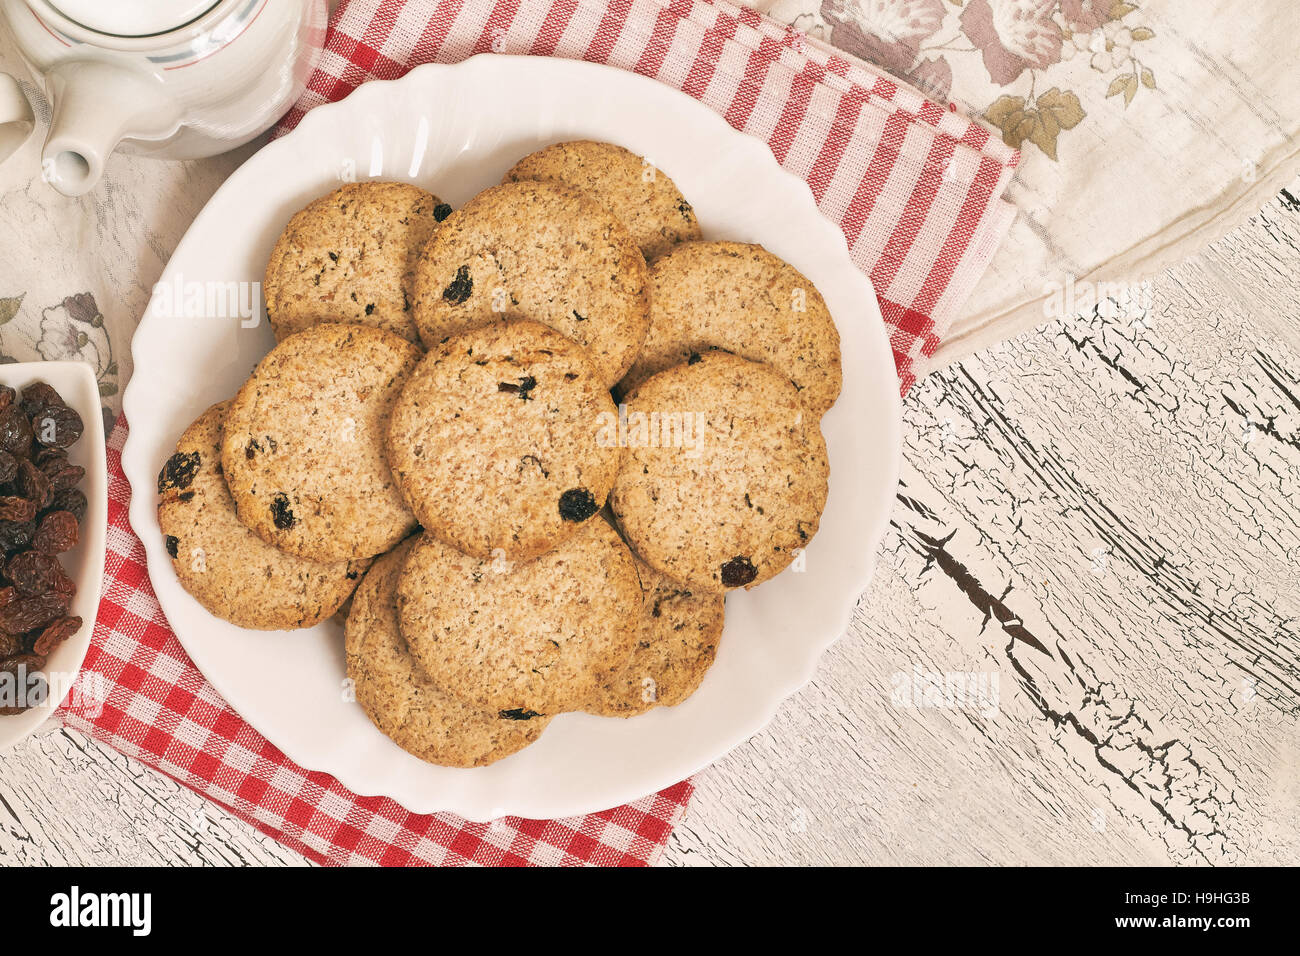 Frumento integrale biscotti con uvetta su bianco tavolo rustico. Vista da sopra con lo spazio di copia Foto Stock